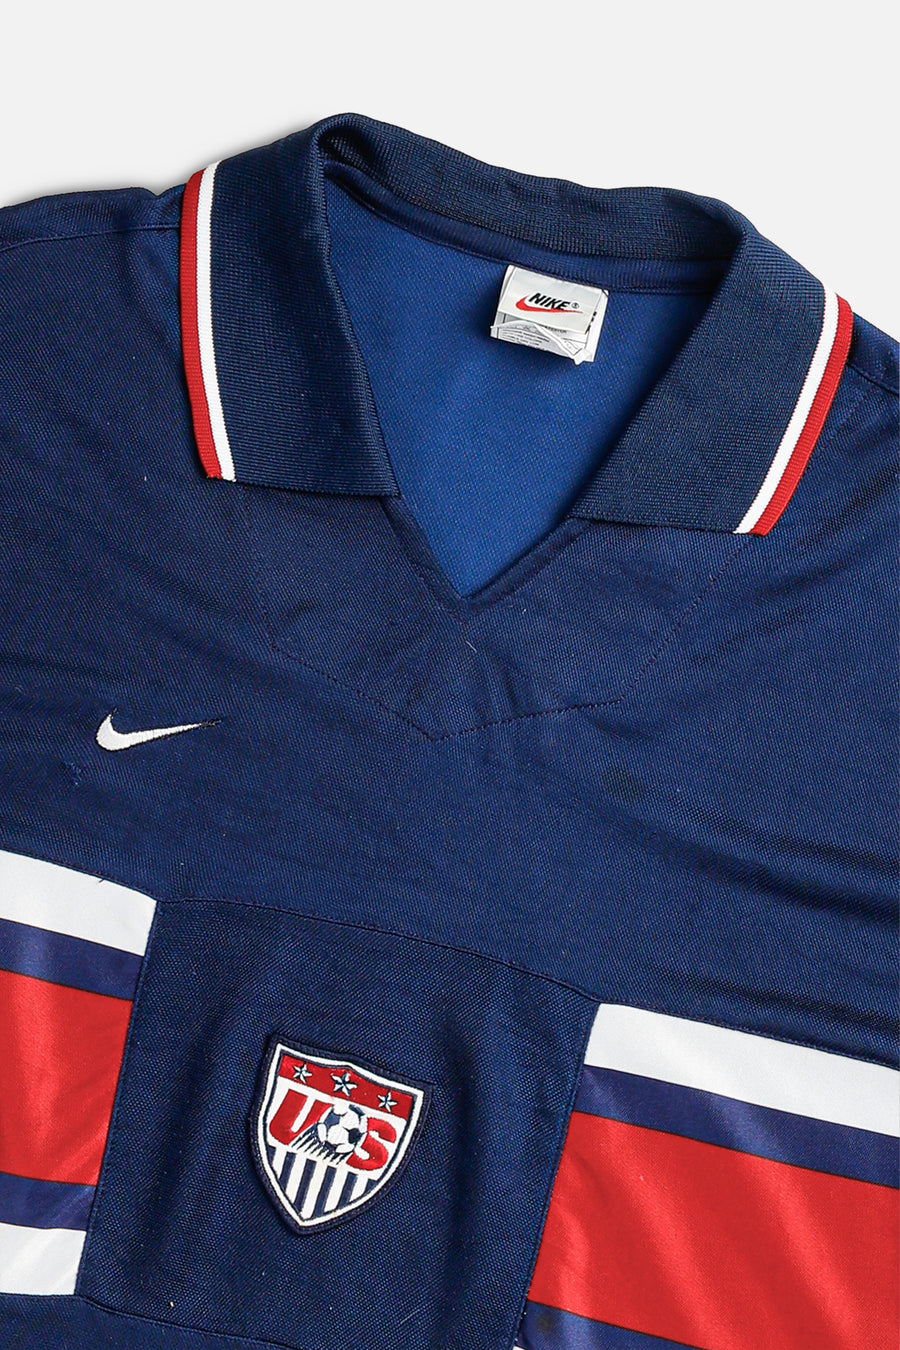 Vintage Nike USA Soccer Jersey - M